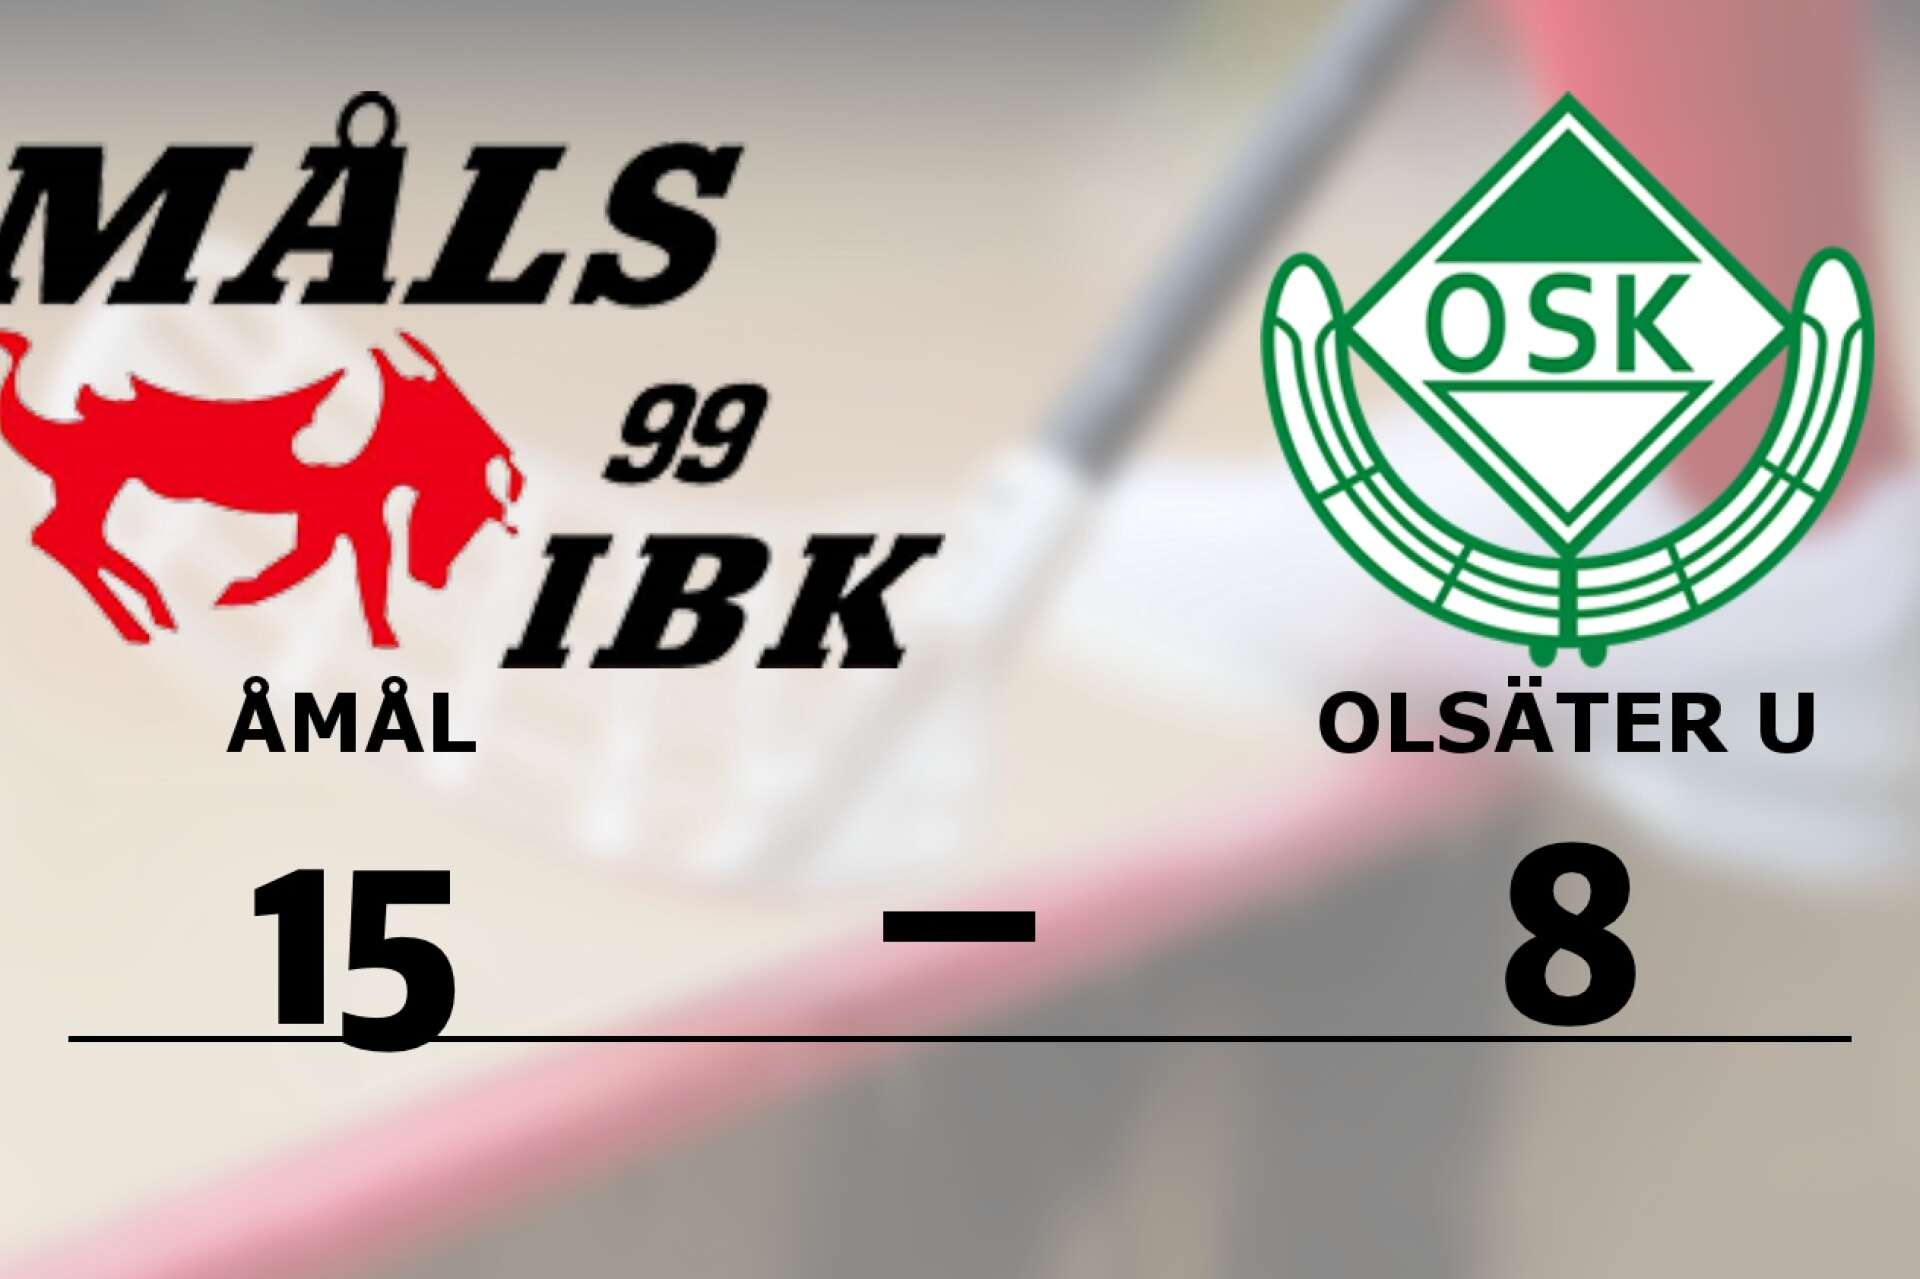 Åmåls IBK vann mot Olsäters SK